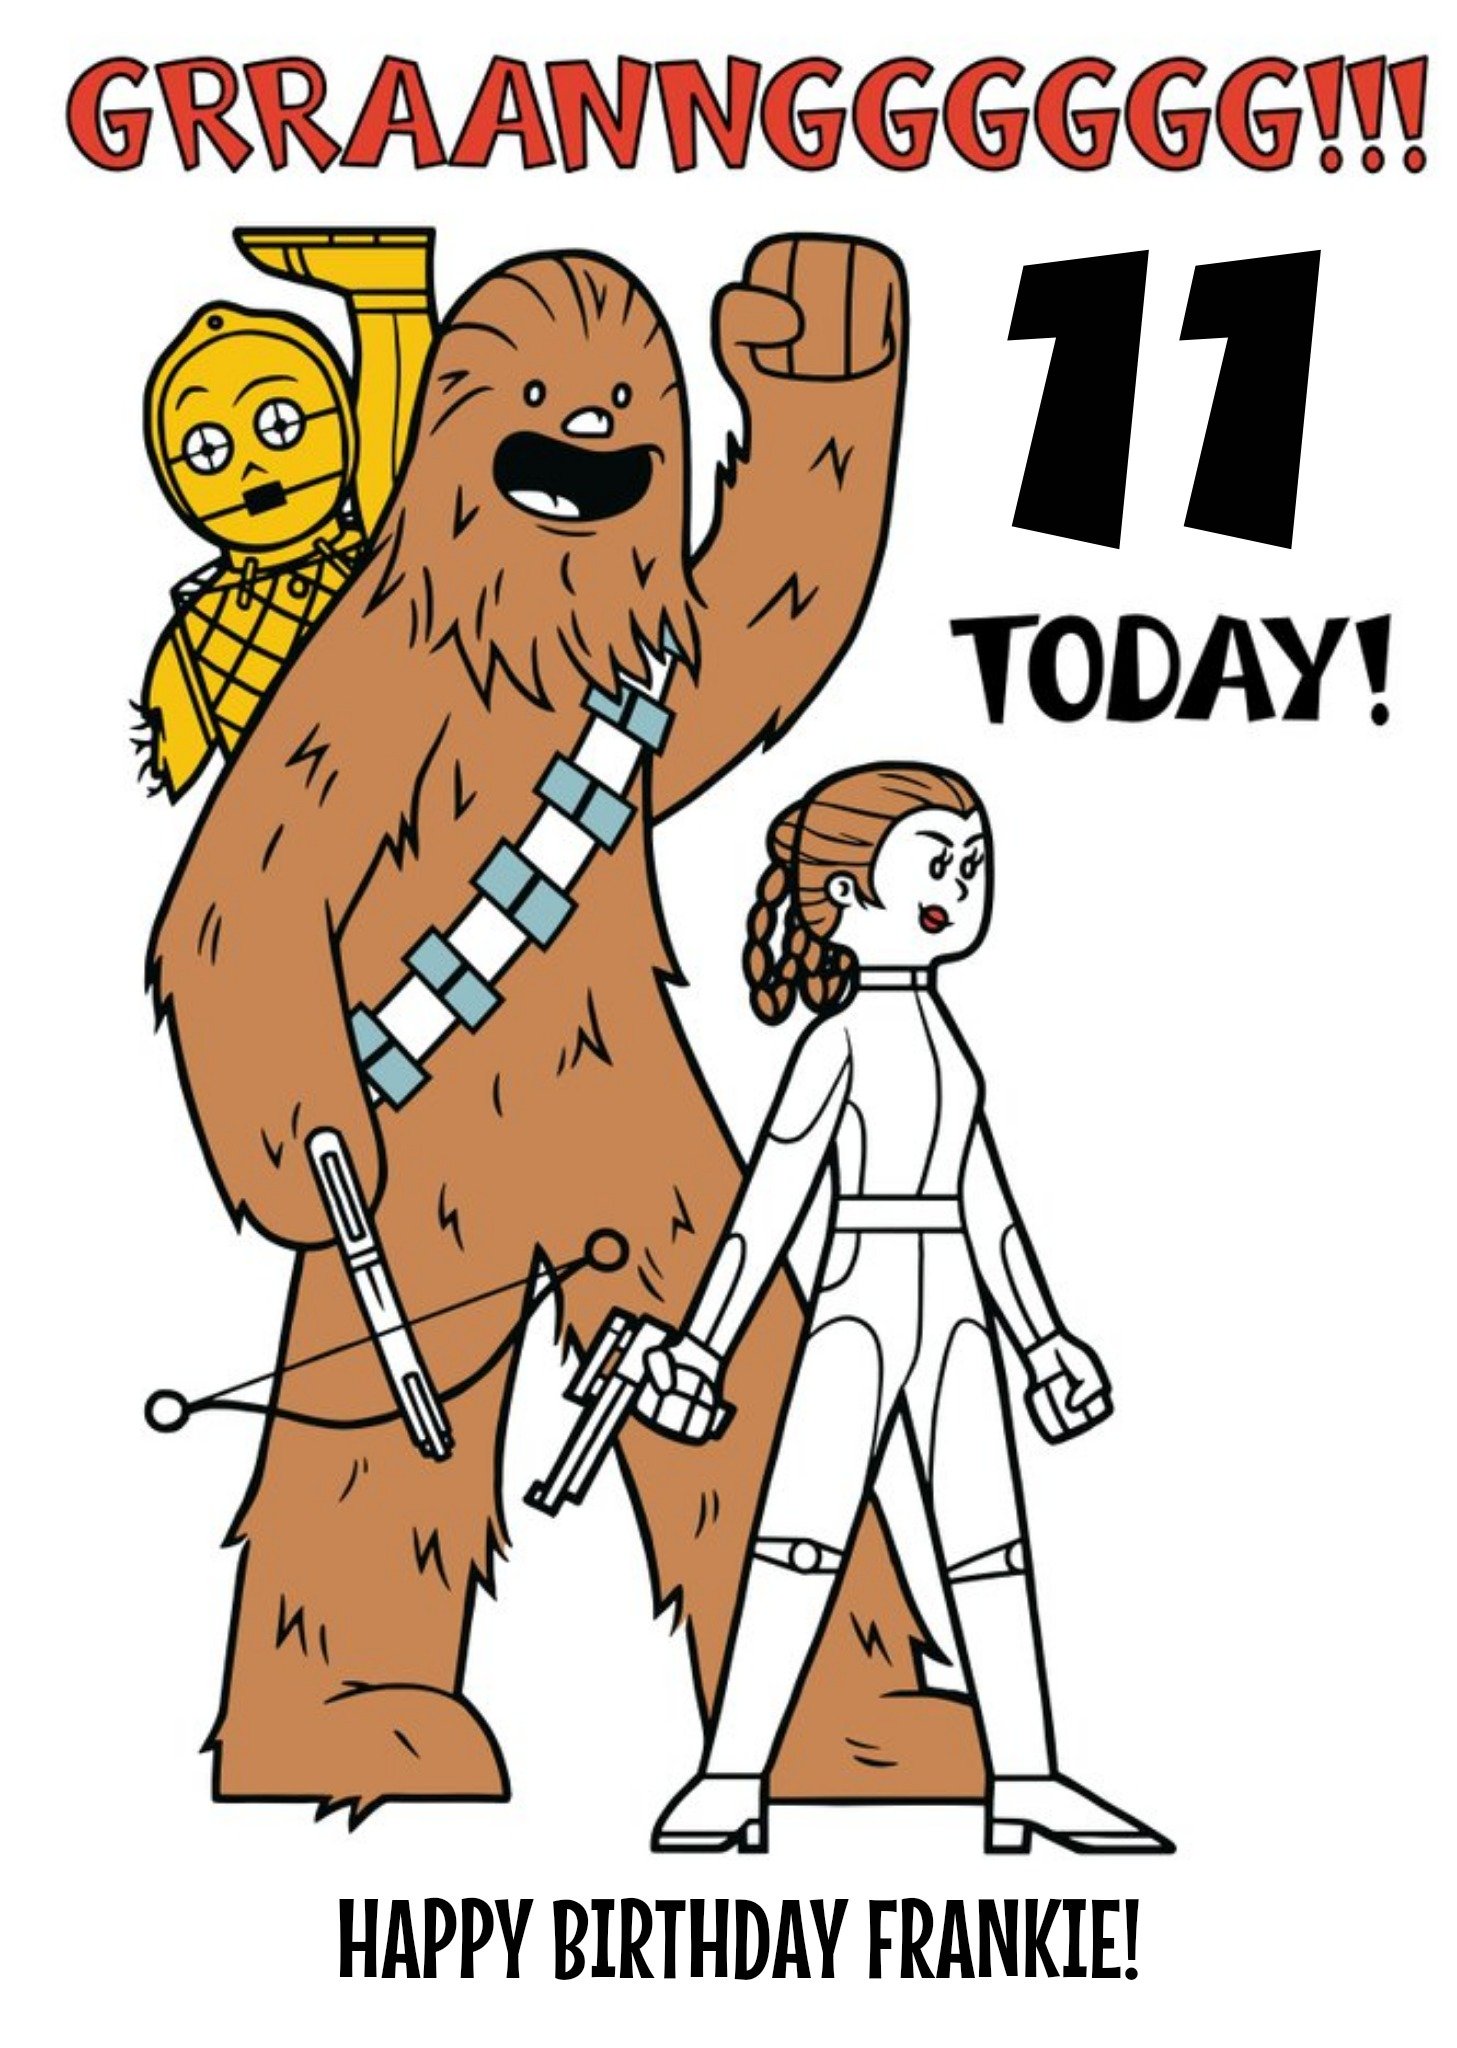 Disney Star Wars Princess Leia Chewbacca And C3Po 11 Today Kids Birthday Card Ecard